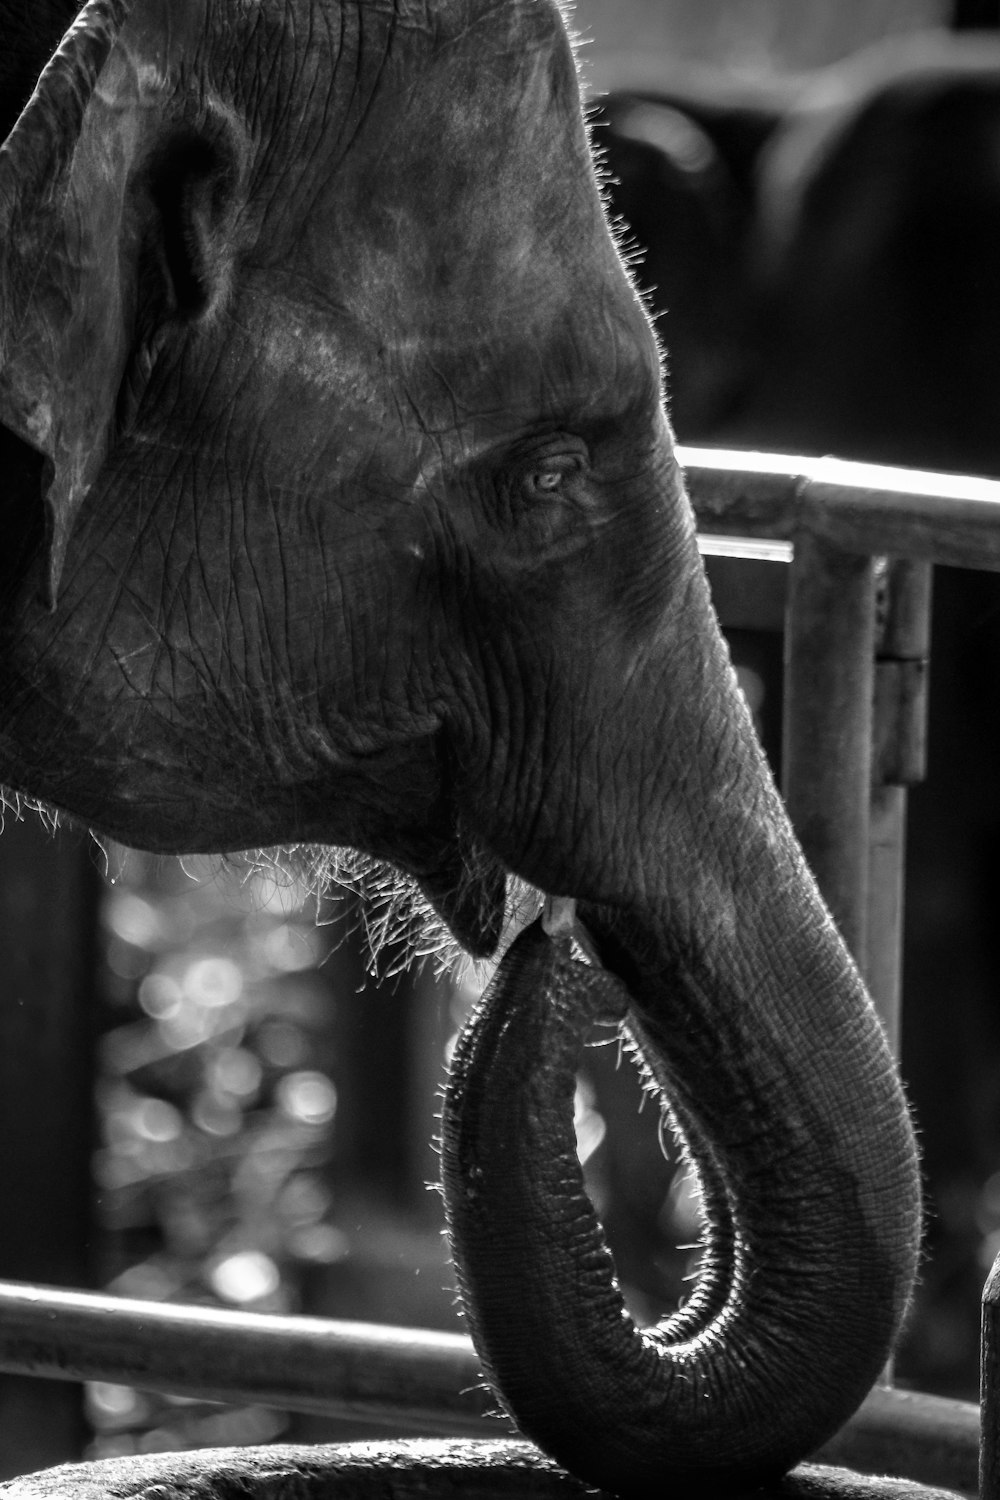 Elefante en fotografía en escala de grises durante el día